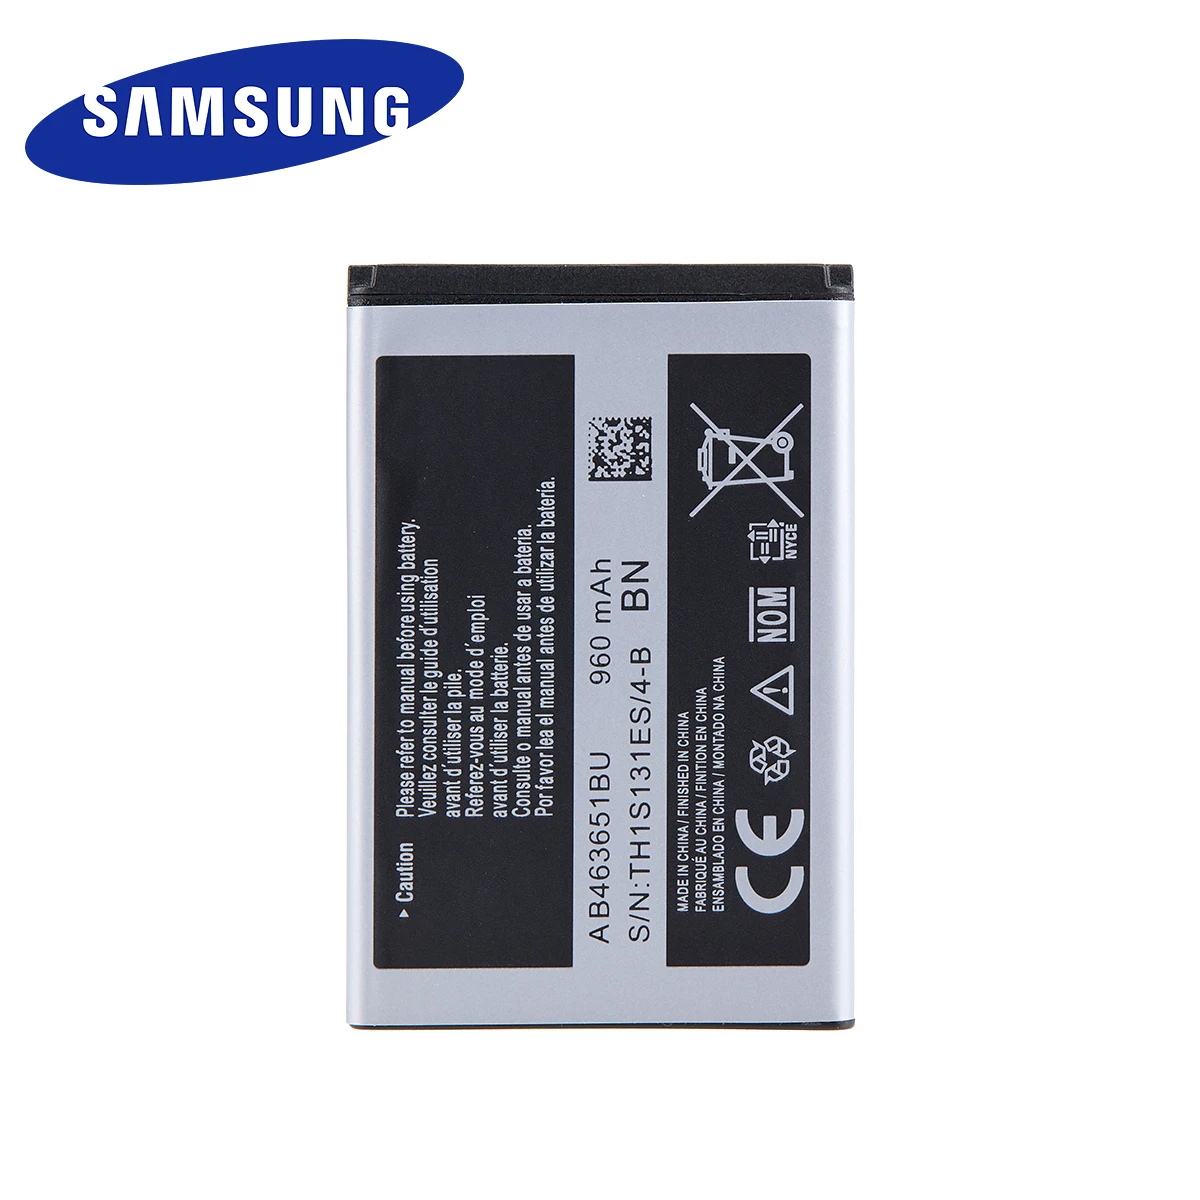 Оригинальный аккумулятор SAMSUNG AB463651BU для Samsung S5620i S5630C S5560C W559 J808 F339 S5296 C3322 L708E C3370